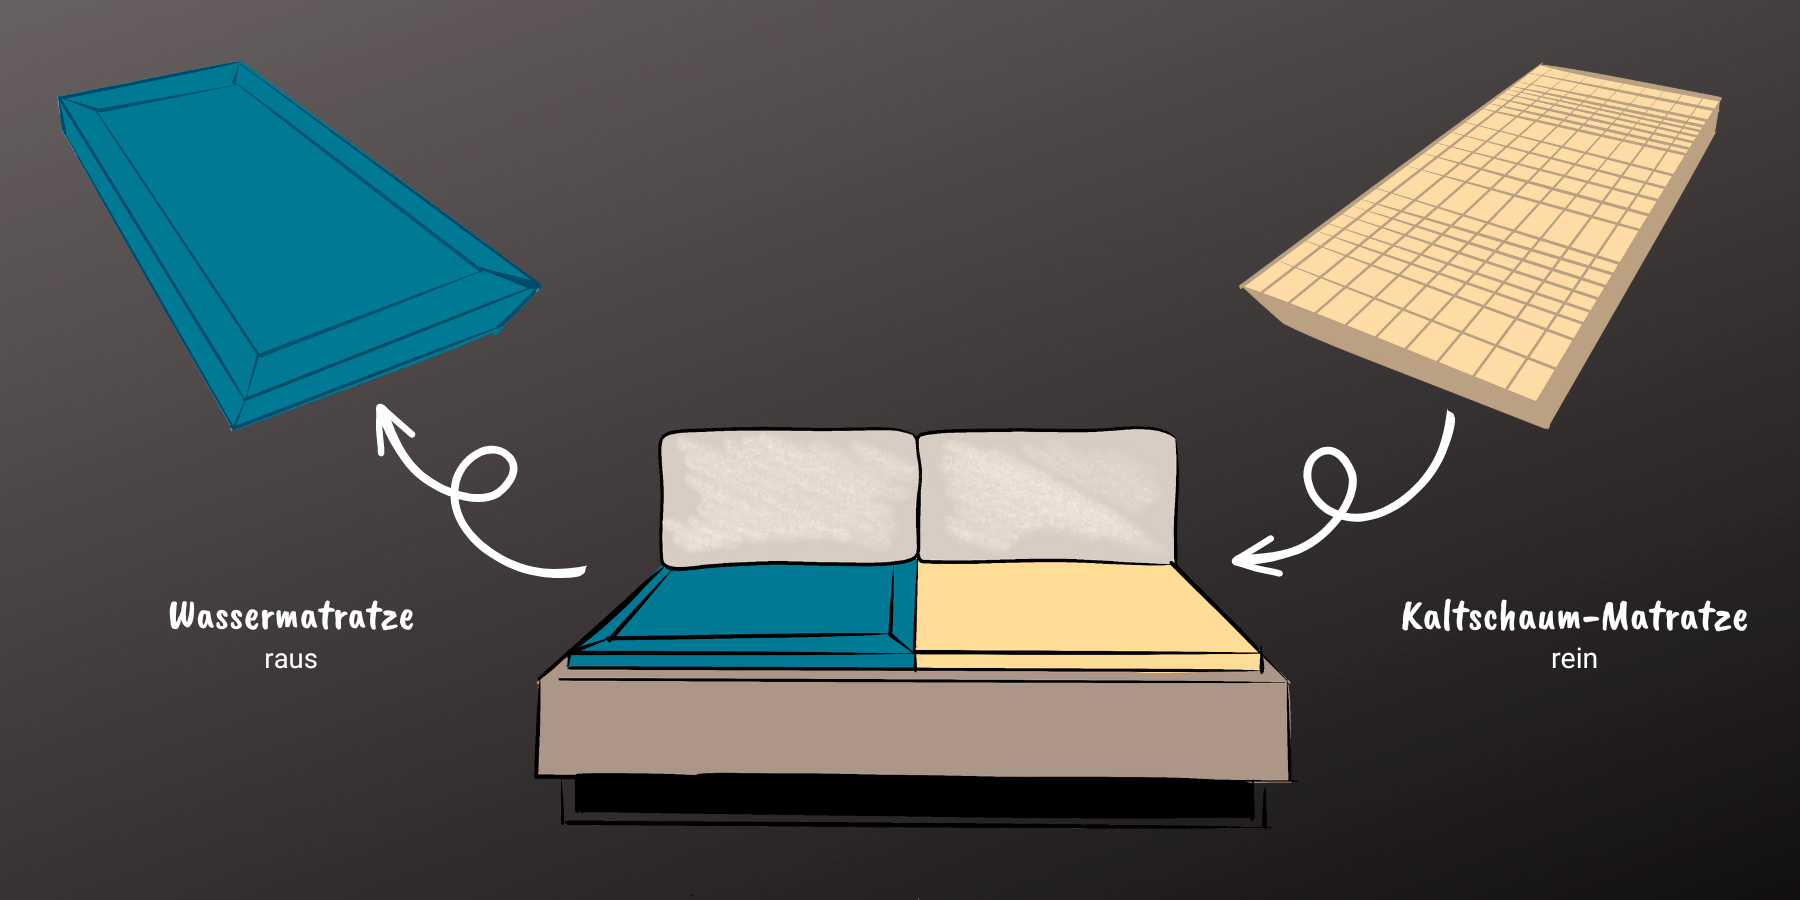 Wasserbett umbauen in ein normales Bett Sie wollen eine normale Matratze in Ihr Wasserbett einbauen? Hier gibt es Tipps wie dies z.B. mit unseren Umrüst-Sets gelingt ✓ einfach ✓ schnell ✓ günstig